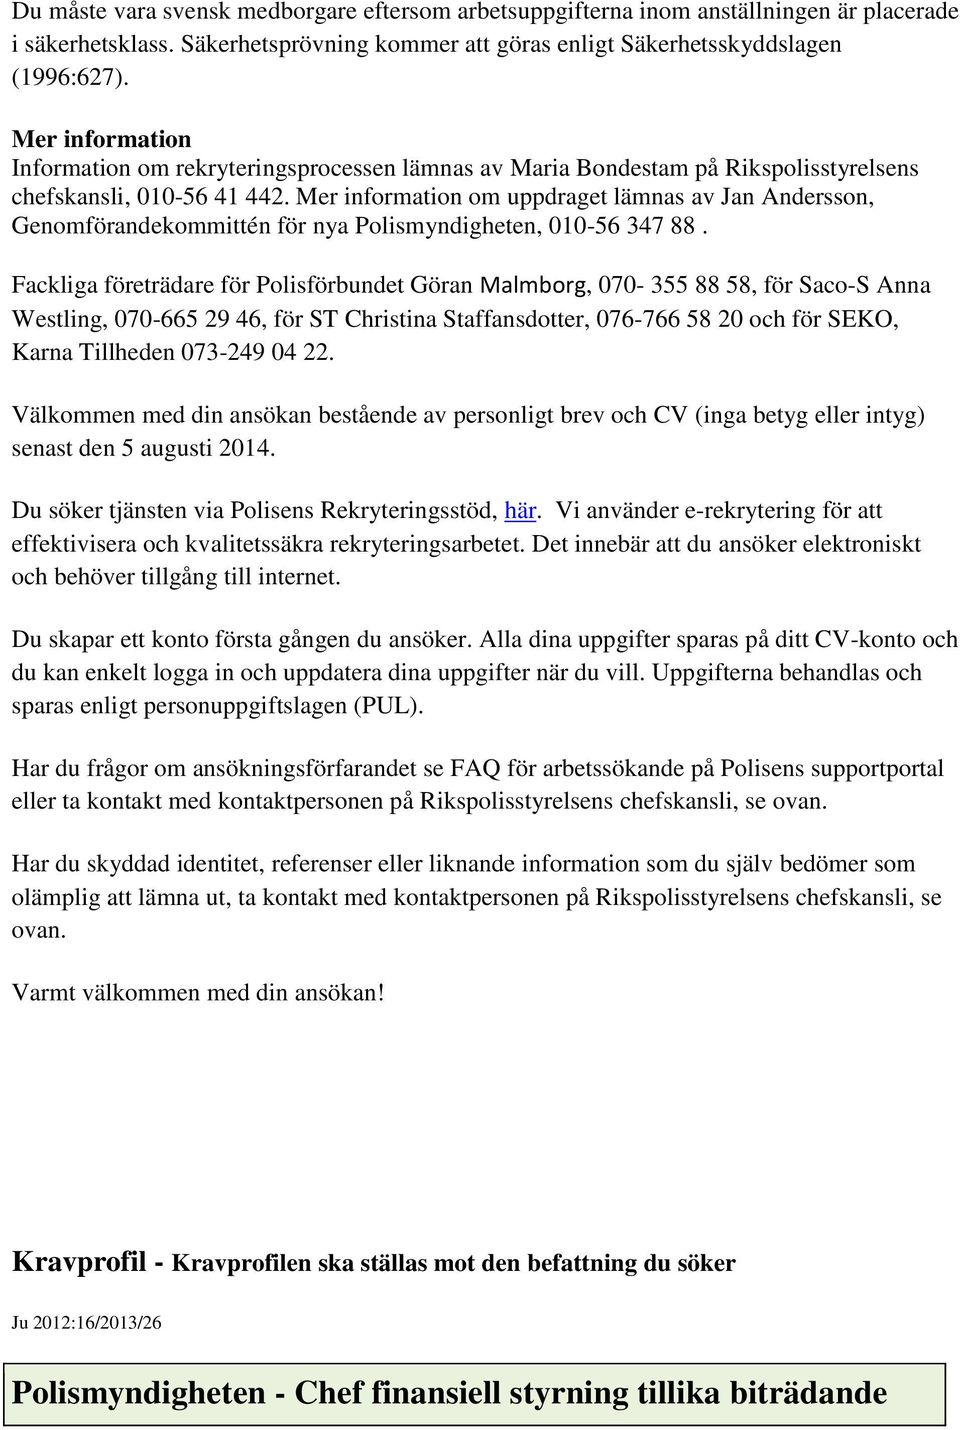 Mer information om uppdraget lämnas av Jan Andersson, Genomförandekommittén för nya Polismyndigheten, 010-56 347 88.